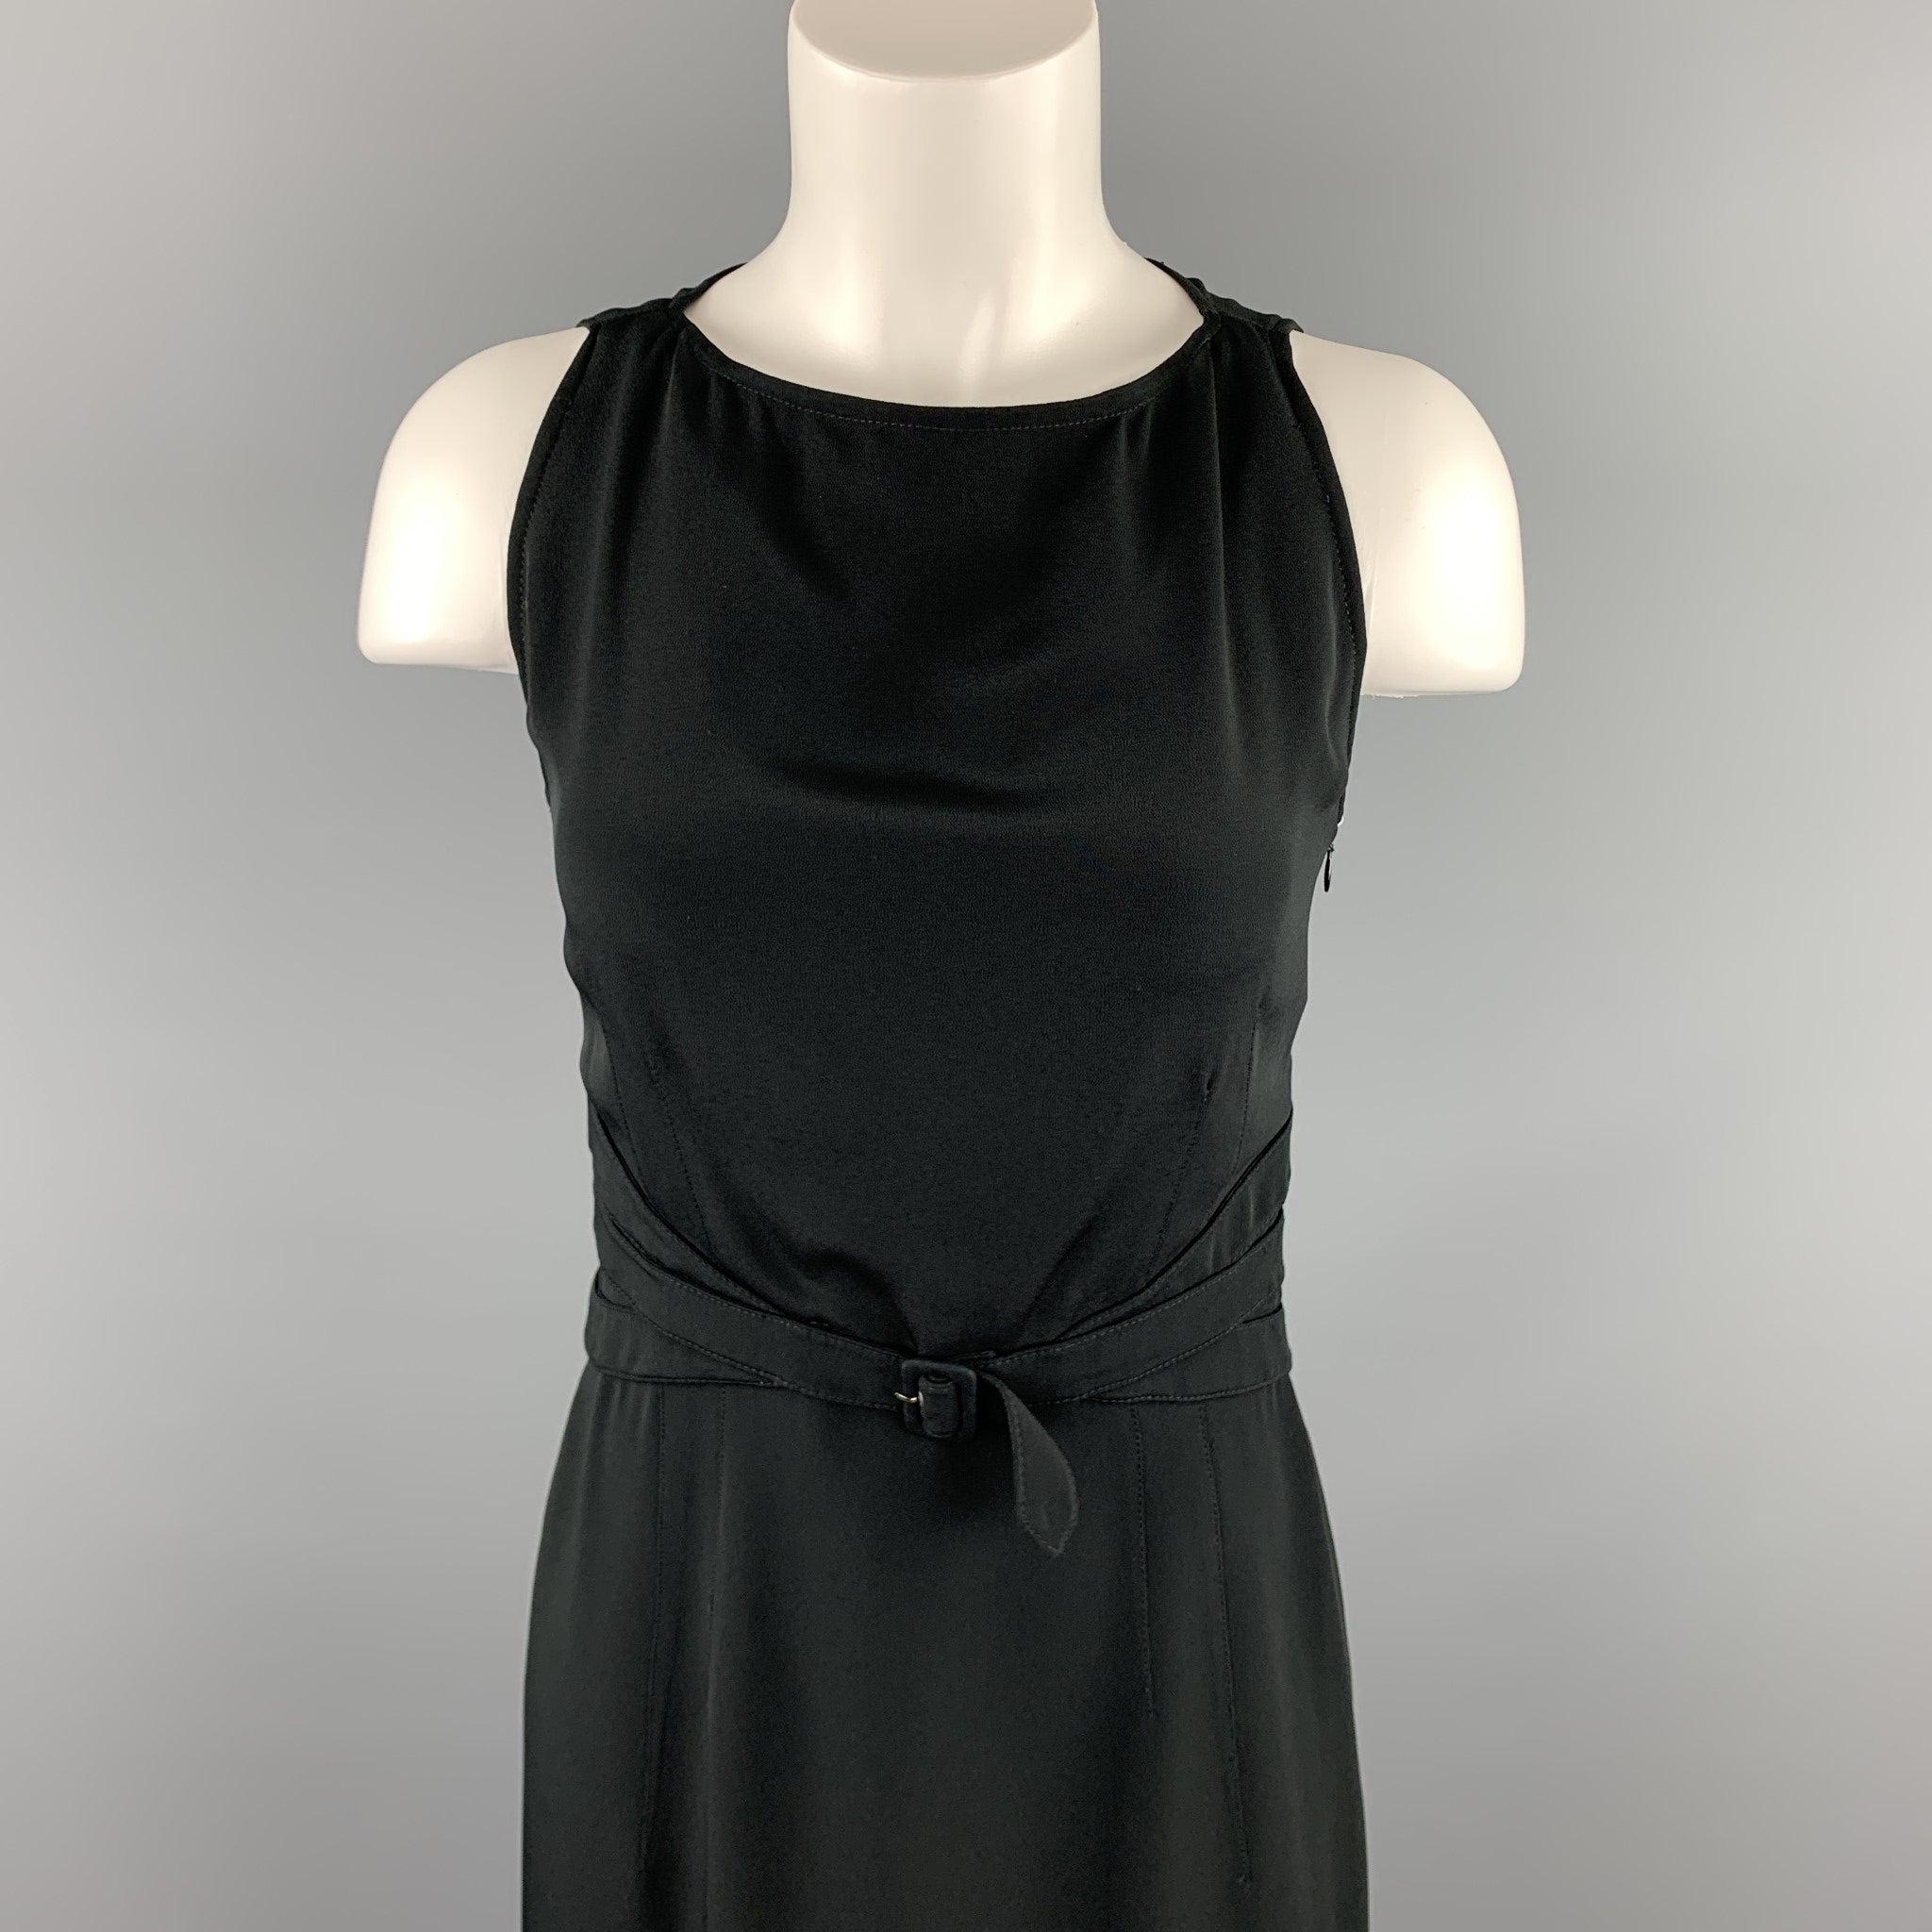 Cette robe de cocktail VALENTINO en acétate et soie noire présente un style fourreau, une ceinture et une fermeture zippée au dos. Fabriqué en Italie.
Etat d'occasion. 

Marqué :  6 

Mesures : 
 
Épaule : 11,5 pouces 
Buste : 32 pouces Taille : 26